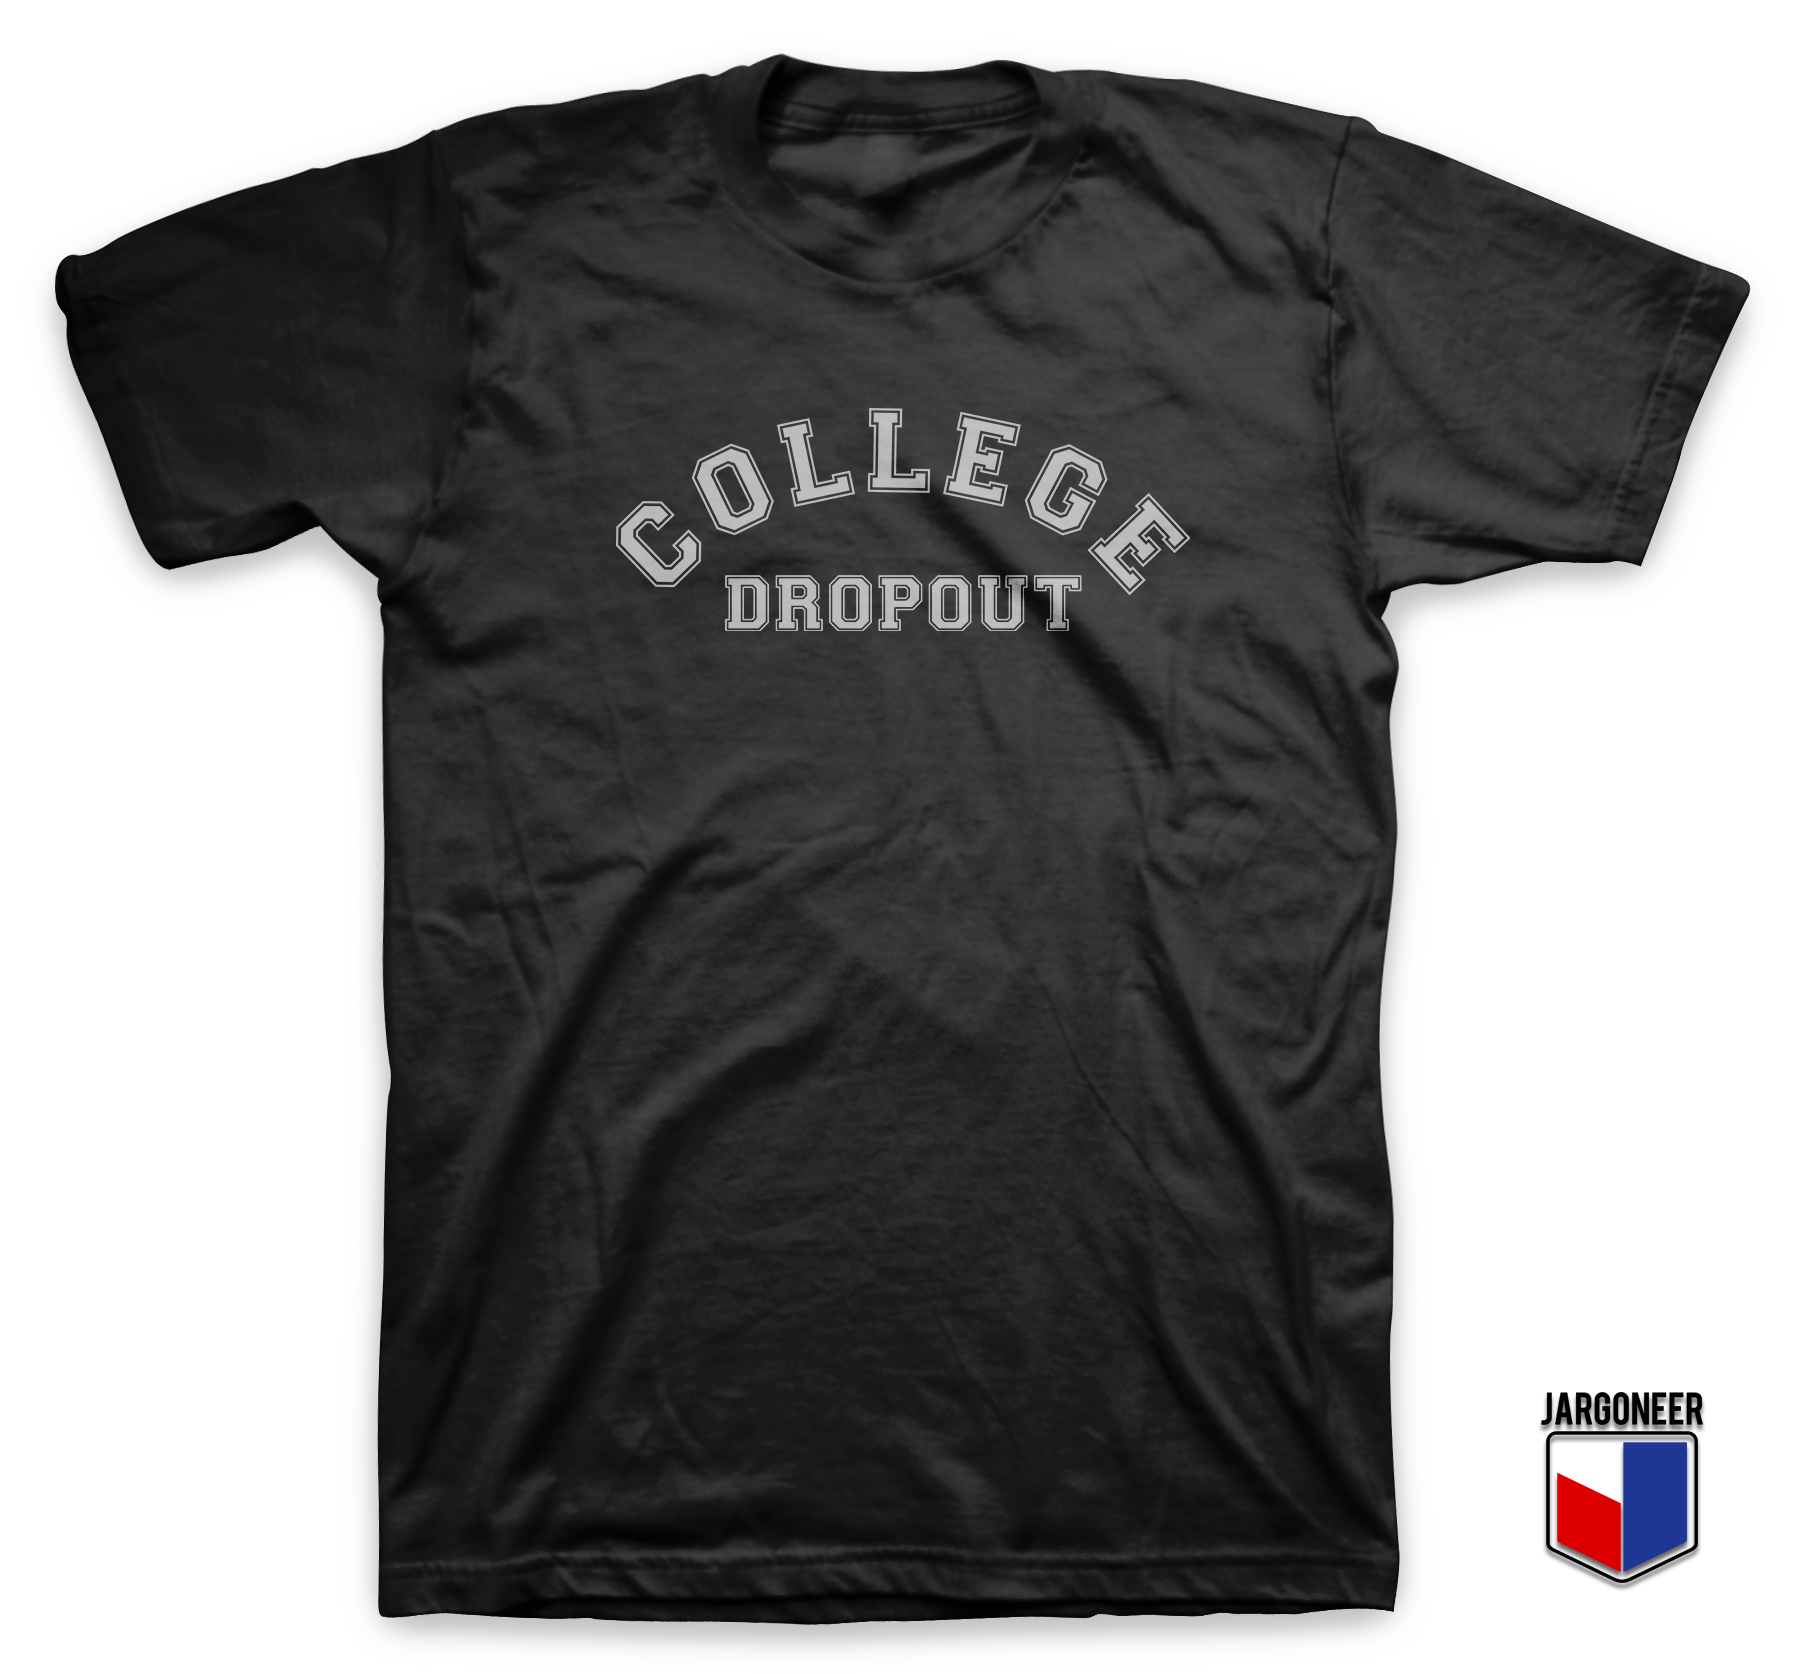 College Dropout Black T Shirt - Shop Unique Graphic Cool Shirt Designs